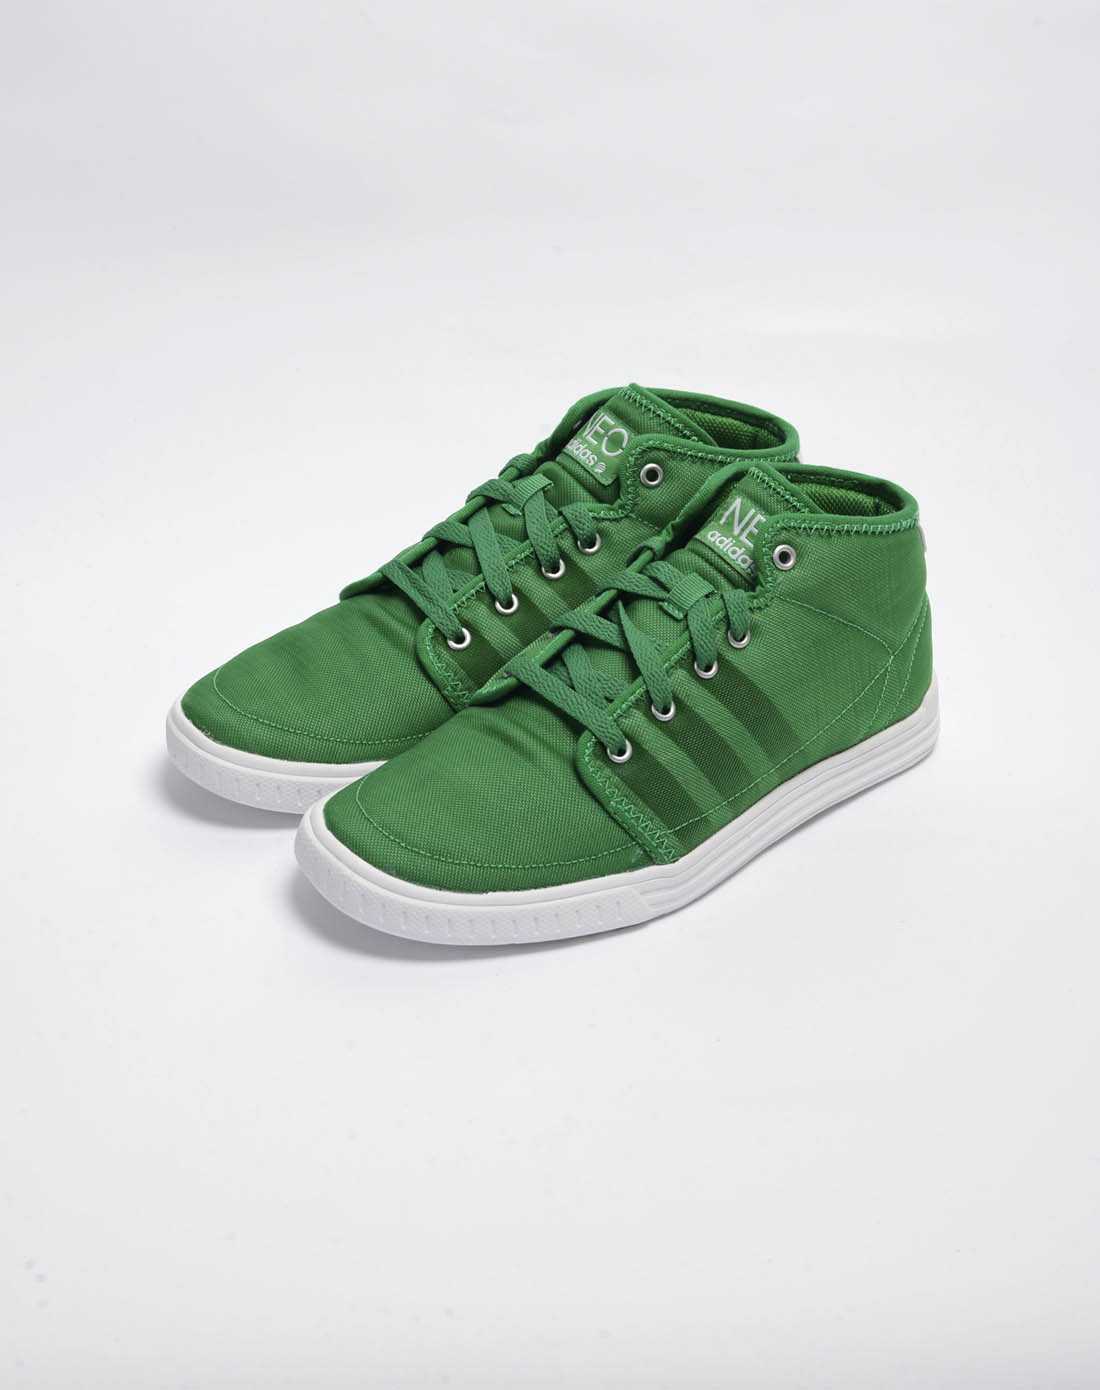 阿迪达斯adidas男子绿色复古鞋G53302